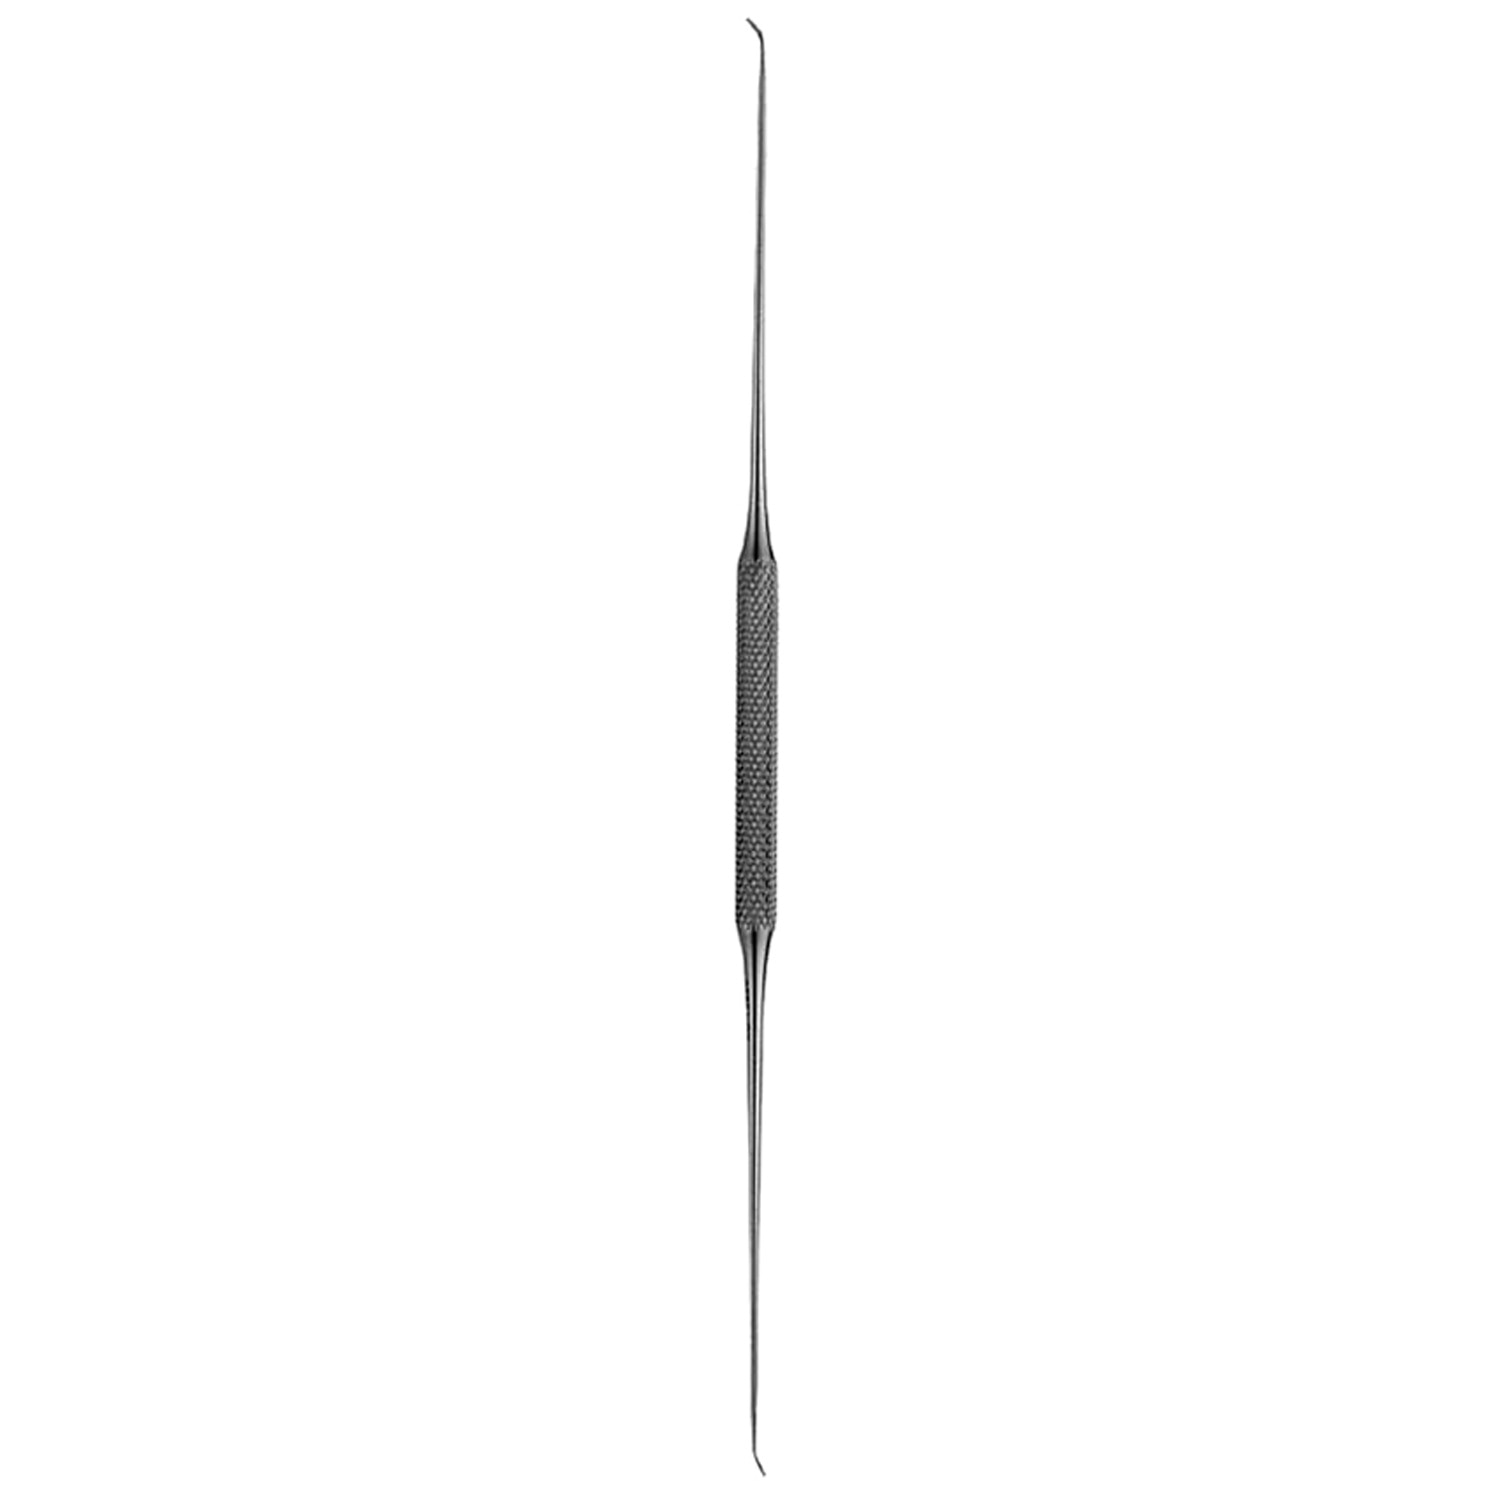 V. Mueller SU3022 Balfour Center Blade, Large, 3 1/8 – imedsales